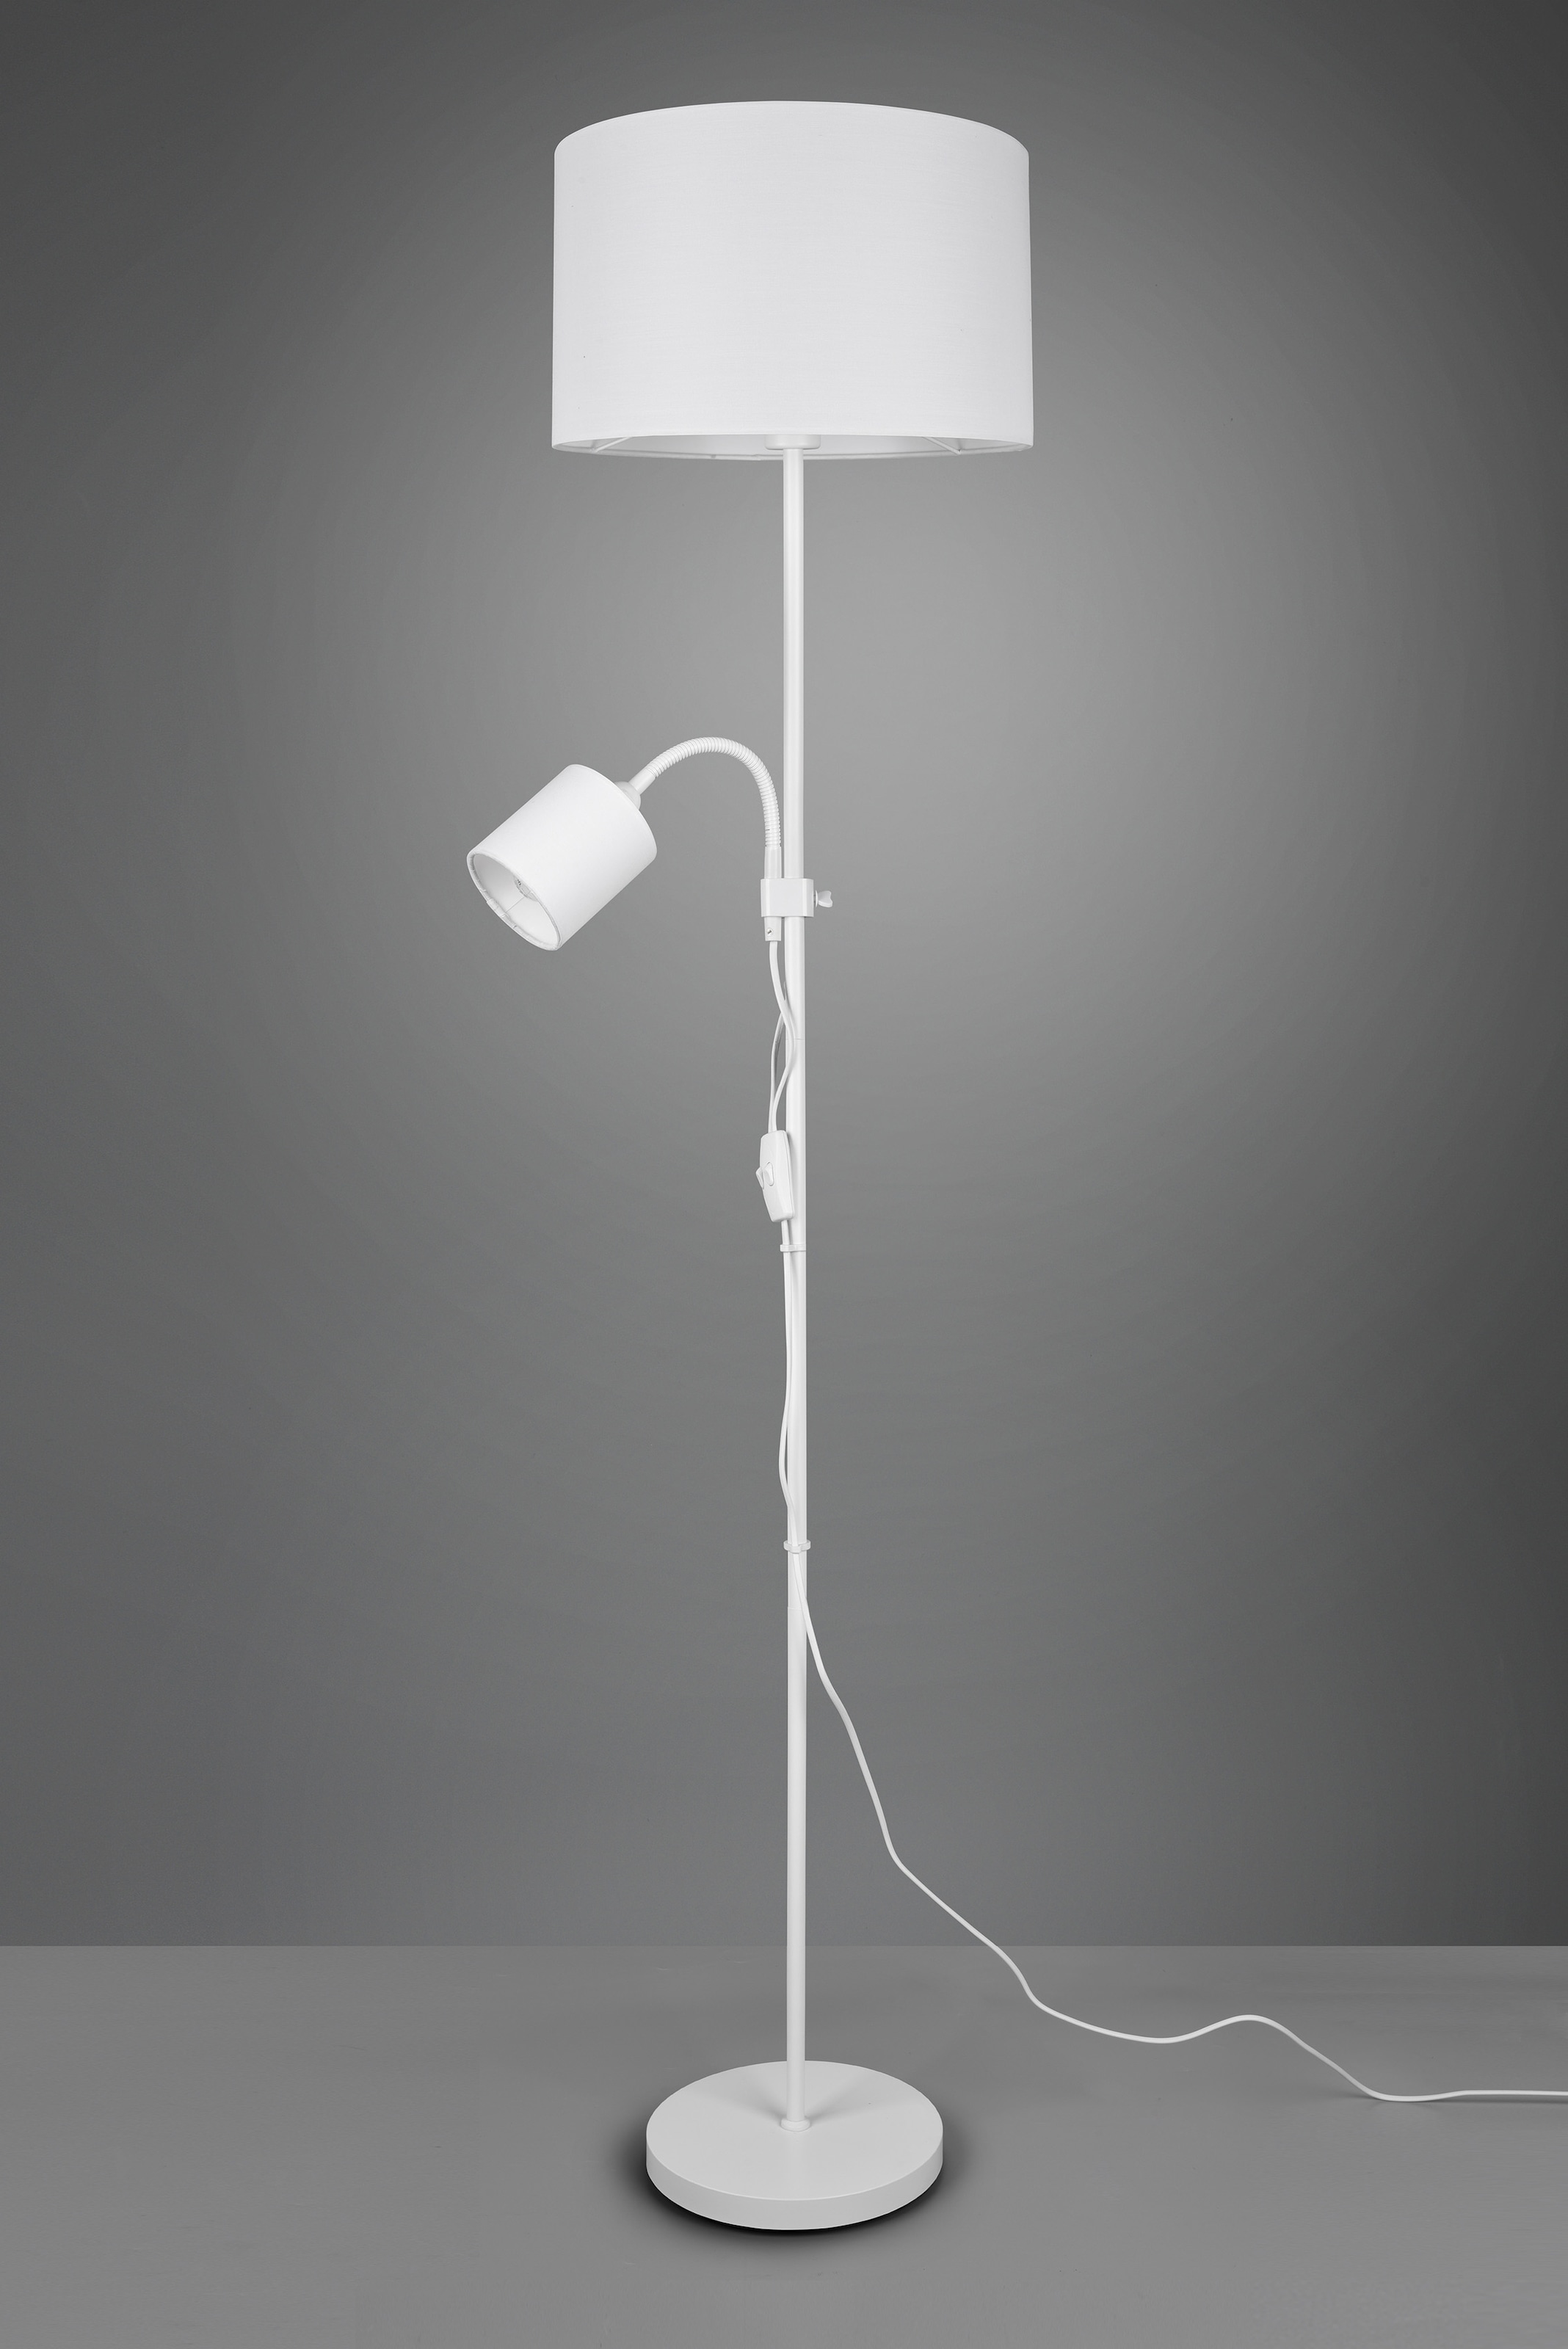 Stehlampe kaufen Lesearm online Getrennt »OWEN«, TRIO Leuchten flexibel, Höhe 160 cm schaltbar,